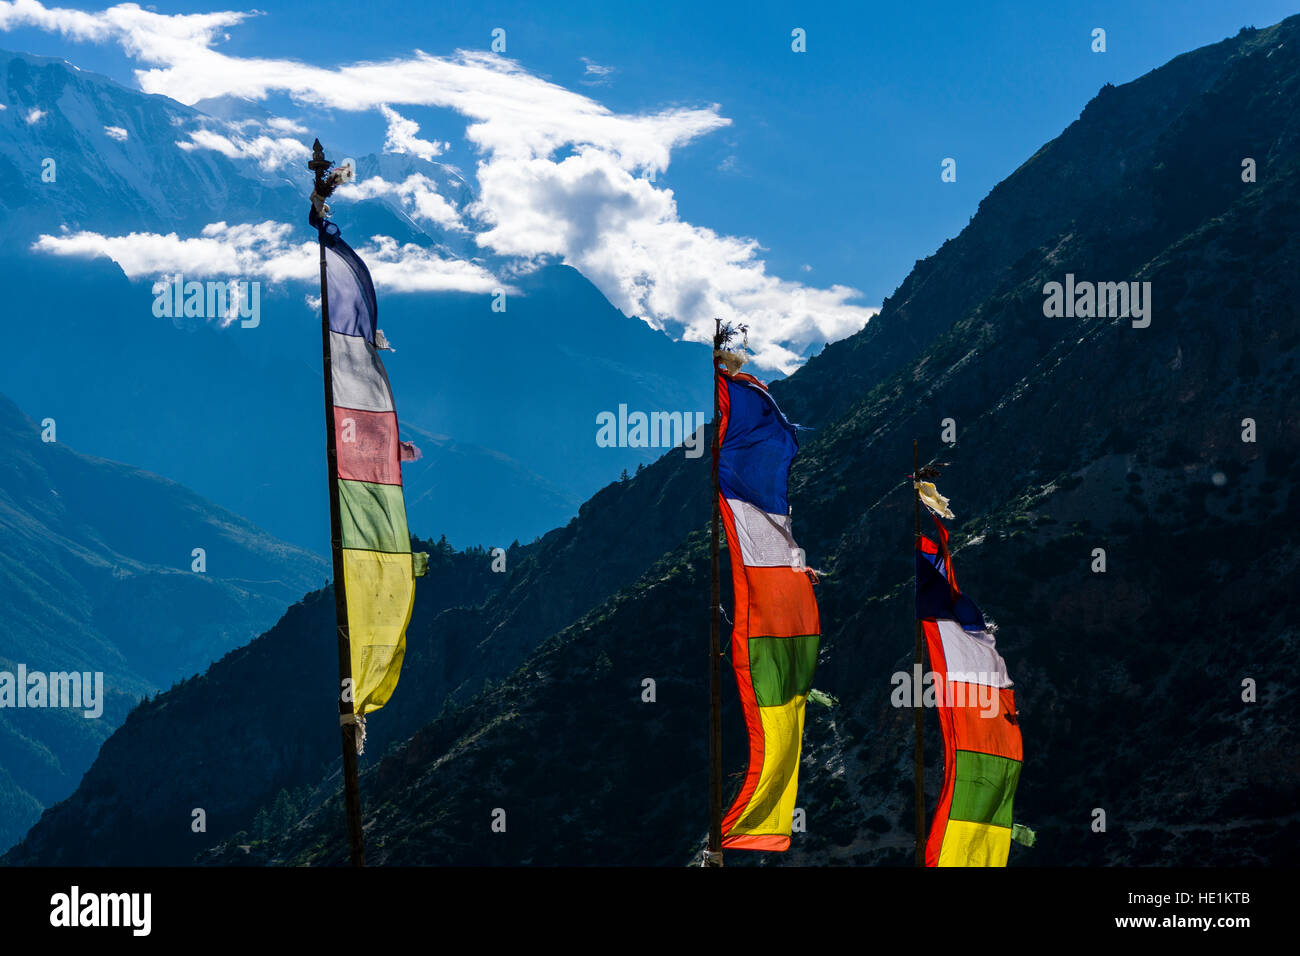 Les drapeaux de prières bouddhistes colorées à flanc de montagne au-dessus de l'upper marsyangdi valley Banque D'Images